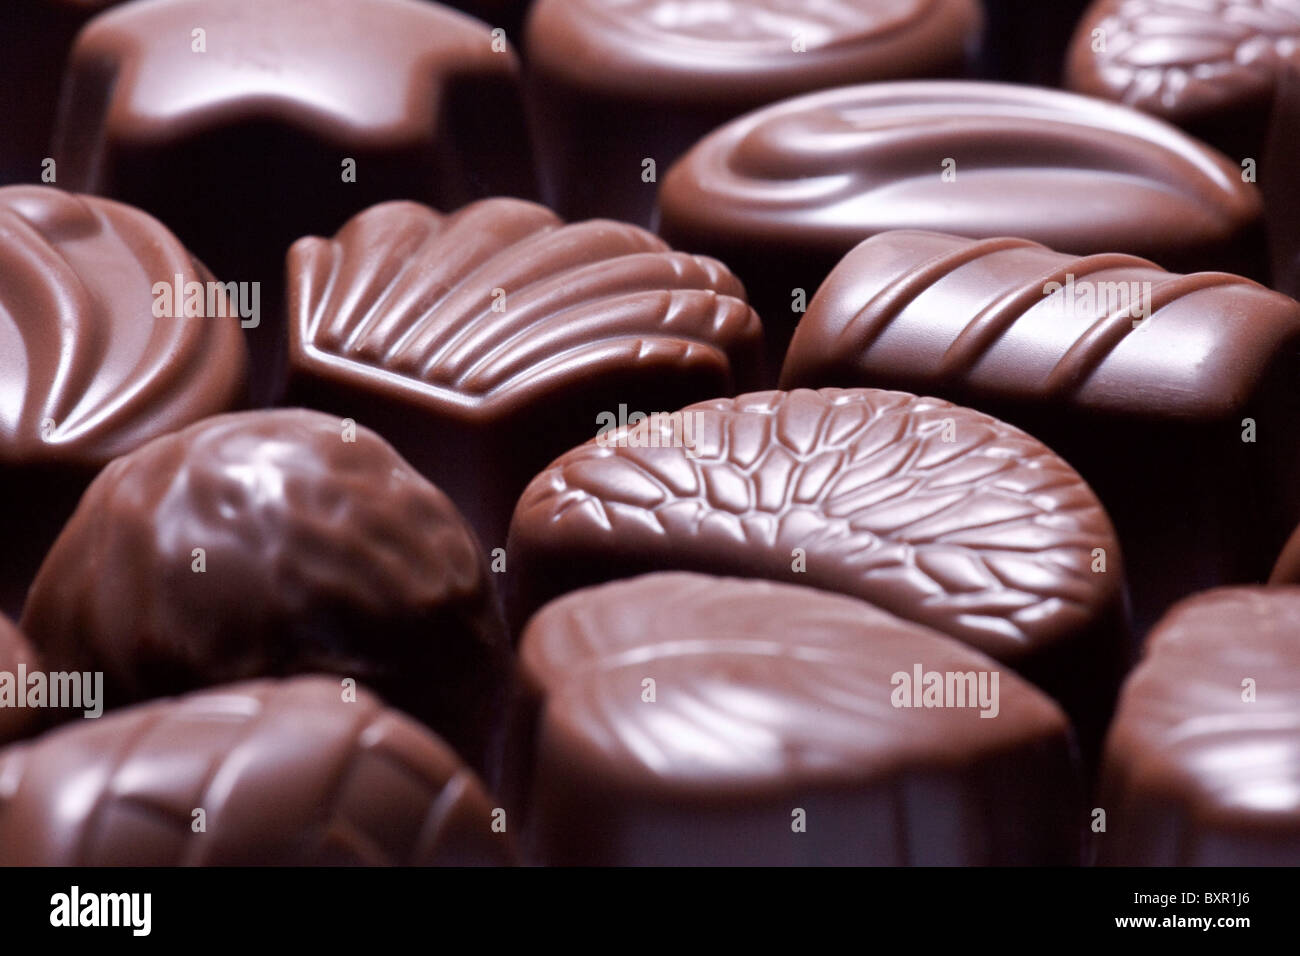 tray of chocolates Stock Photo